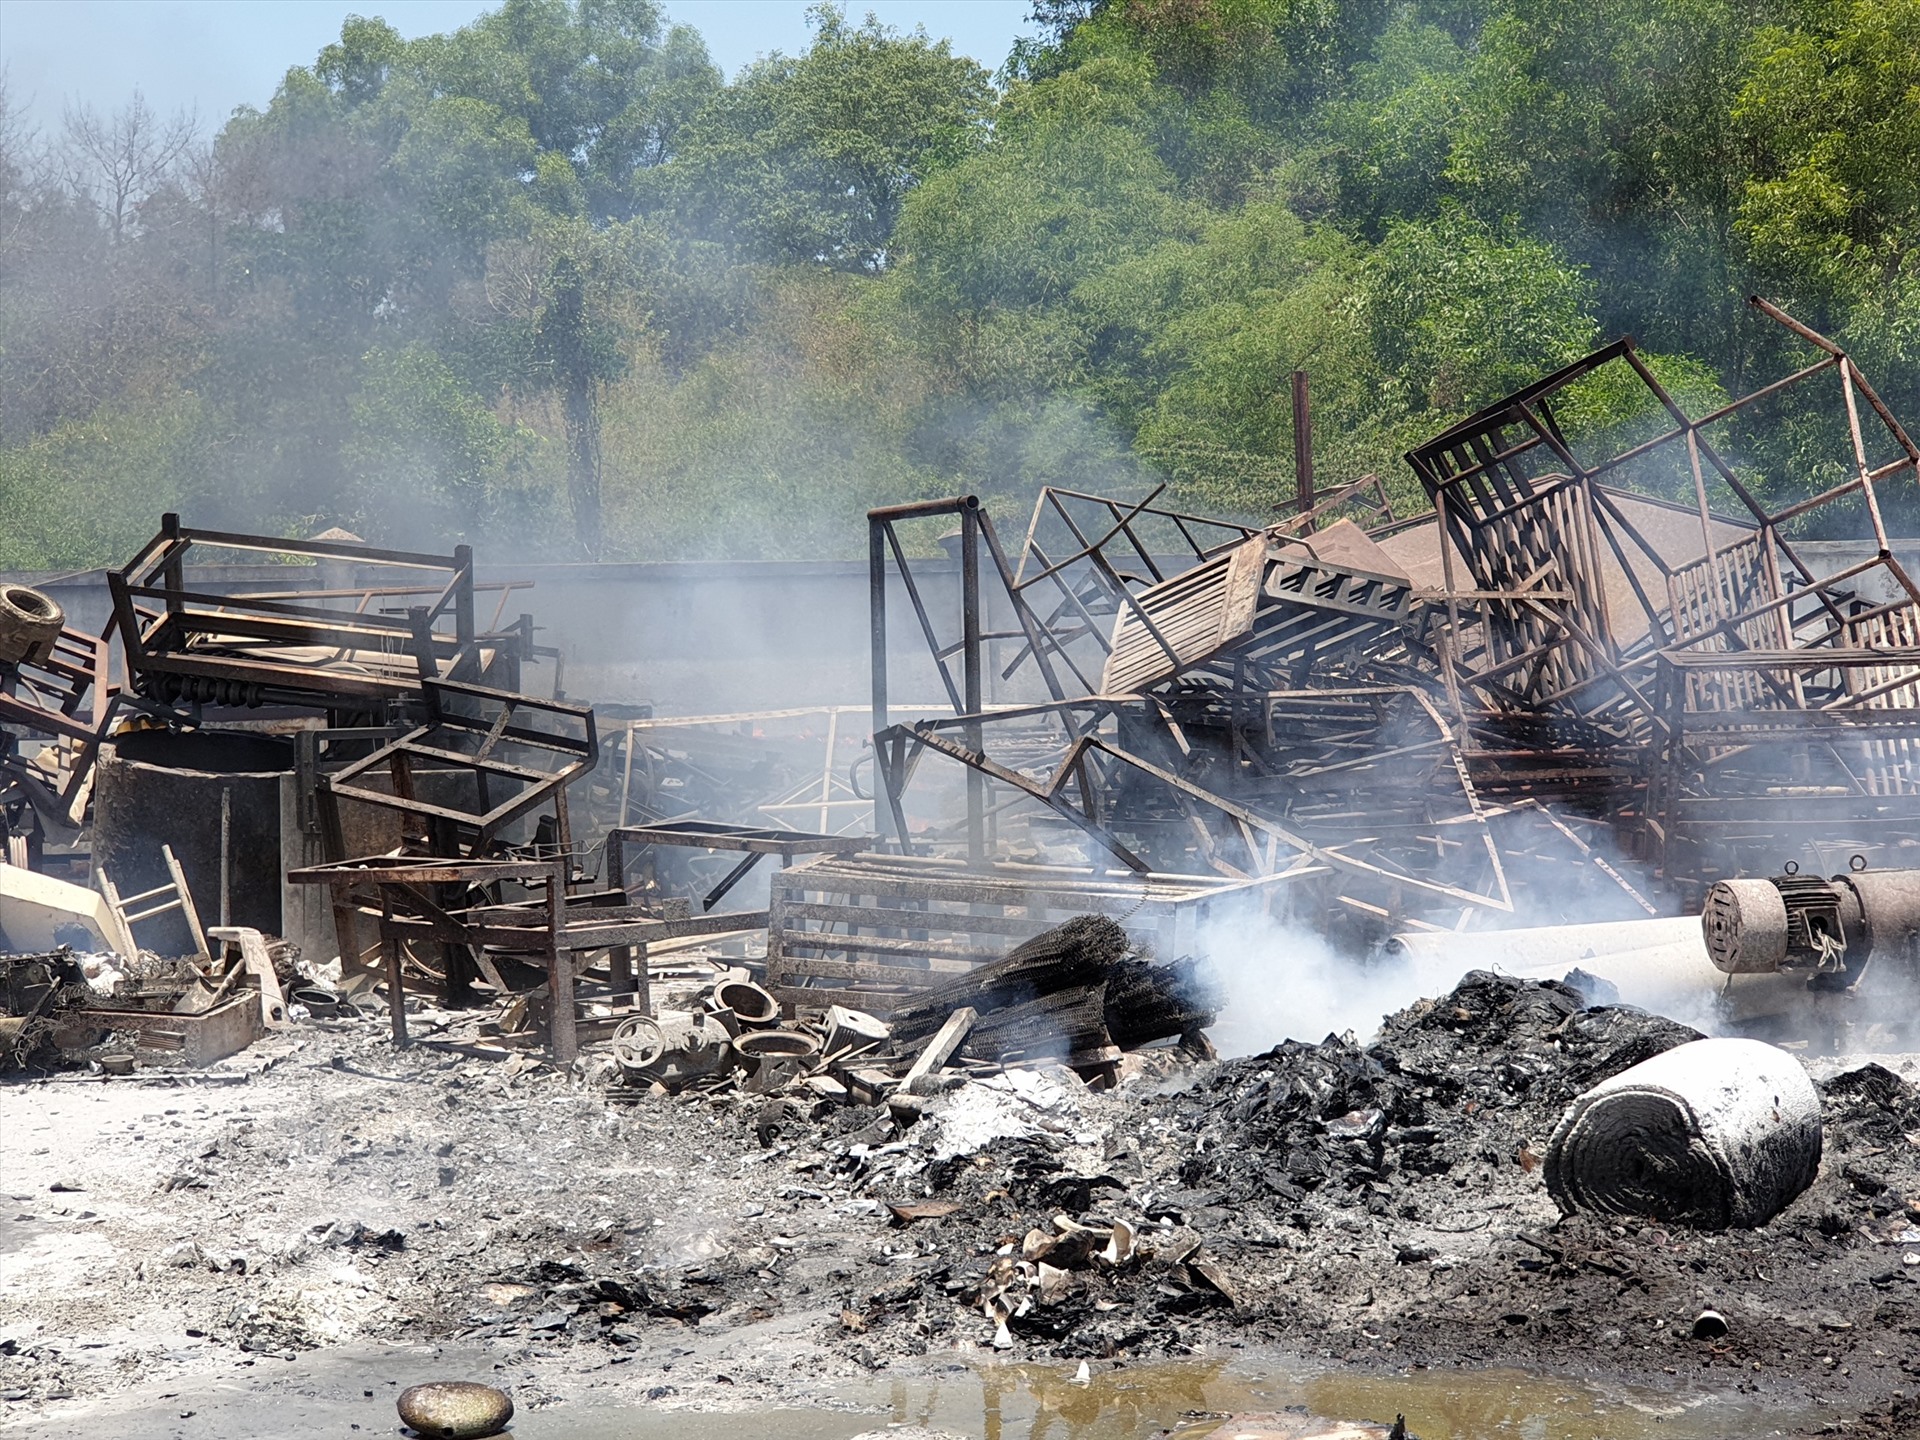 Nhiều vật liệu ở bên ngoài nhà xưởng cũng bị cháy lan.